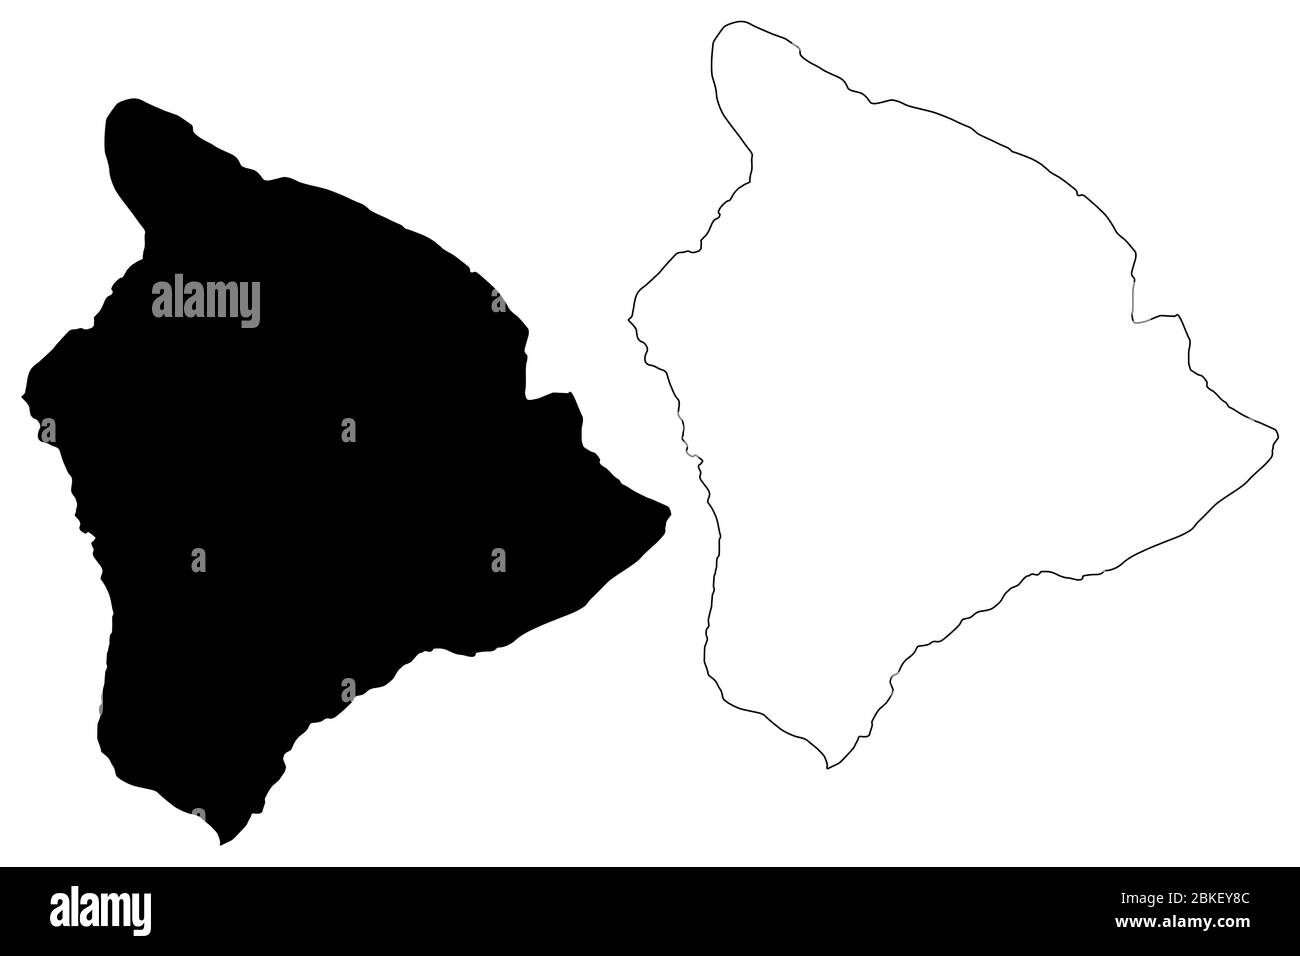 Hawaii County, Hawaï (comté des États-Unis, États-Unis d'Amérique, États-Unis, États-Unis, île, archipel) illustration vectorielle de carte, carte d'esquisse de gribble Illustration de Vecteur